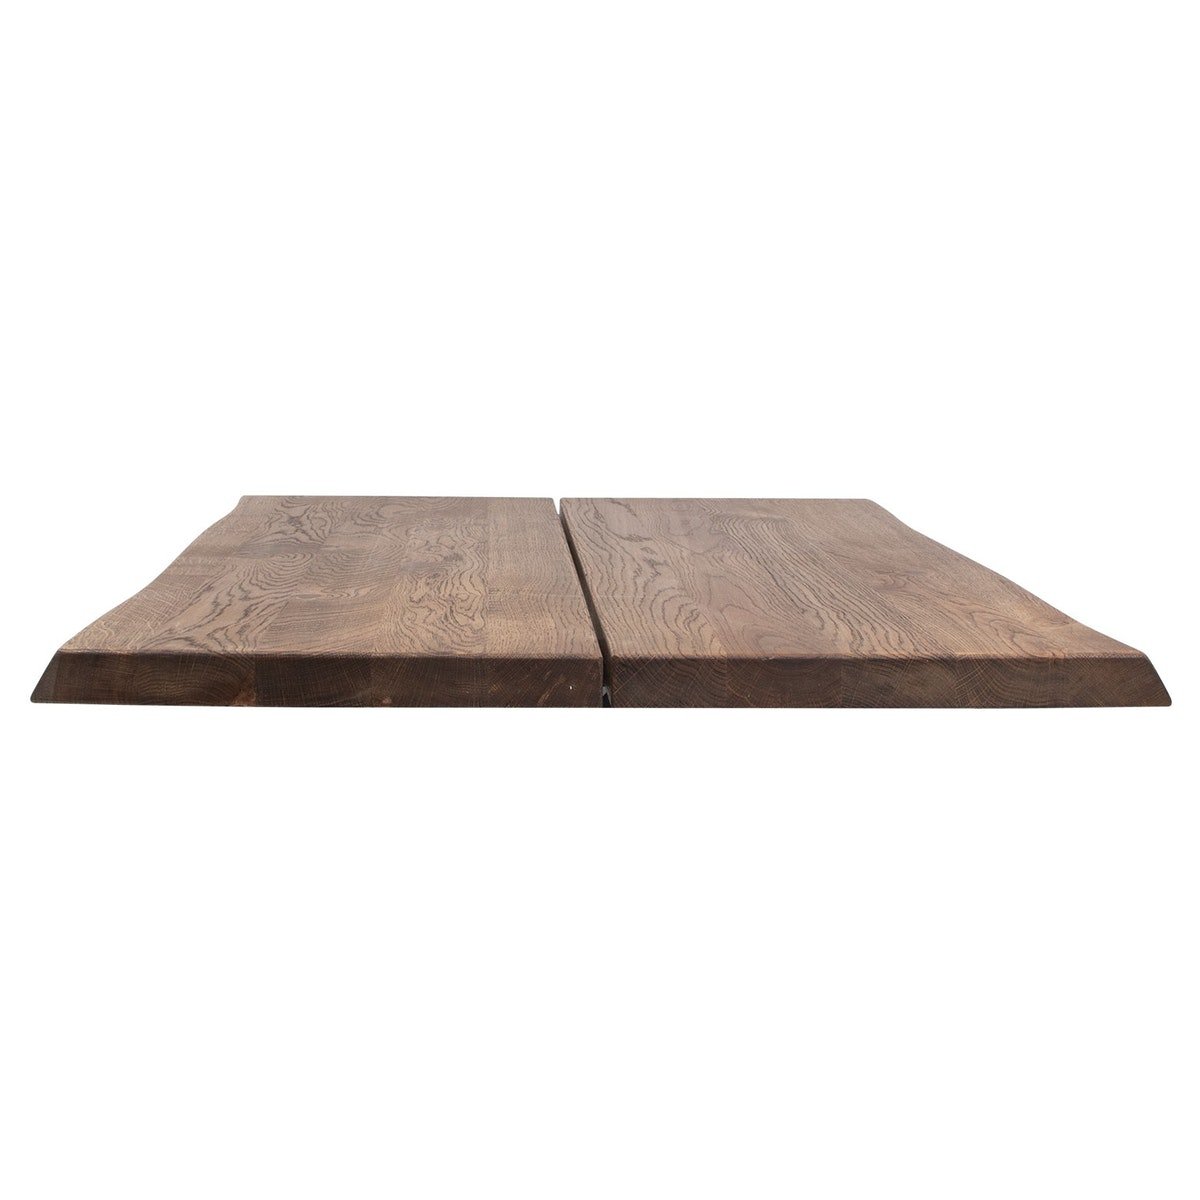 4: Hugin, Bordplade til sofa- eller cafébord, Egetræ by House of Sander (H: 4 cm. B: 80 cm. L: 80 cm., Smoked)